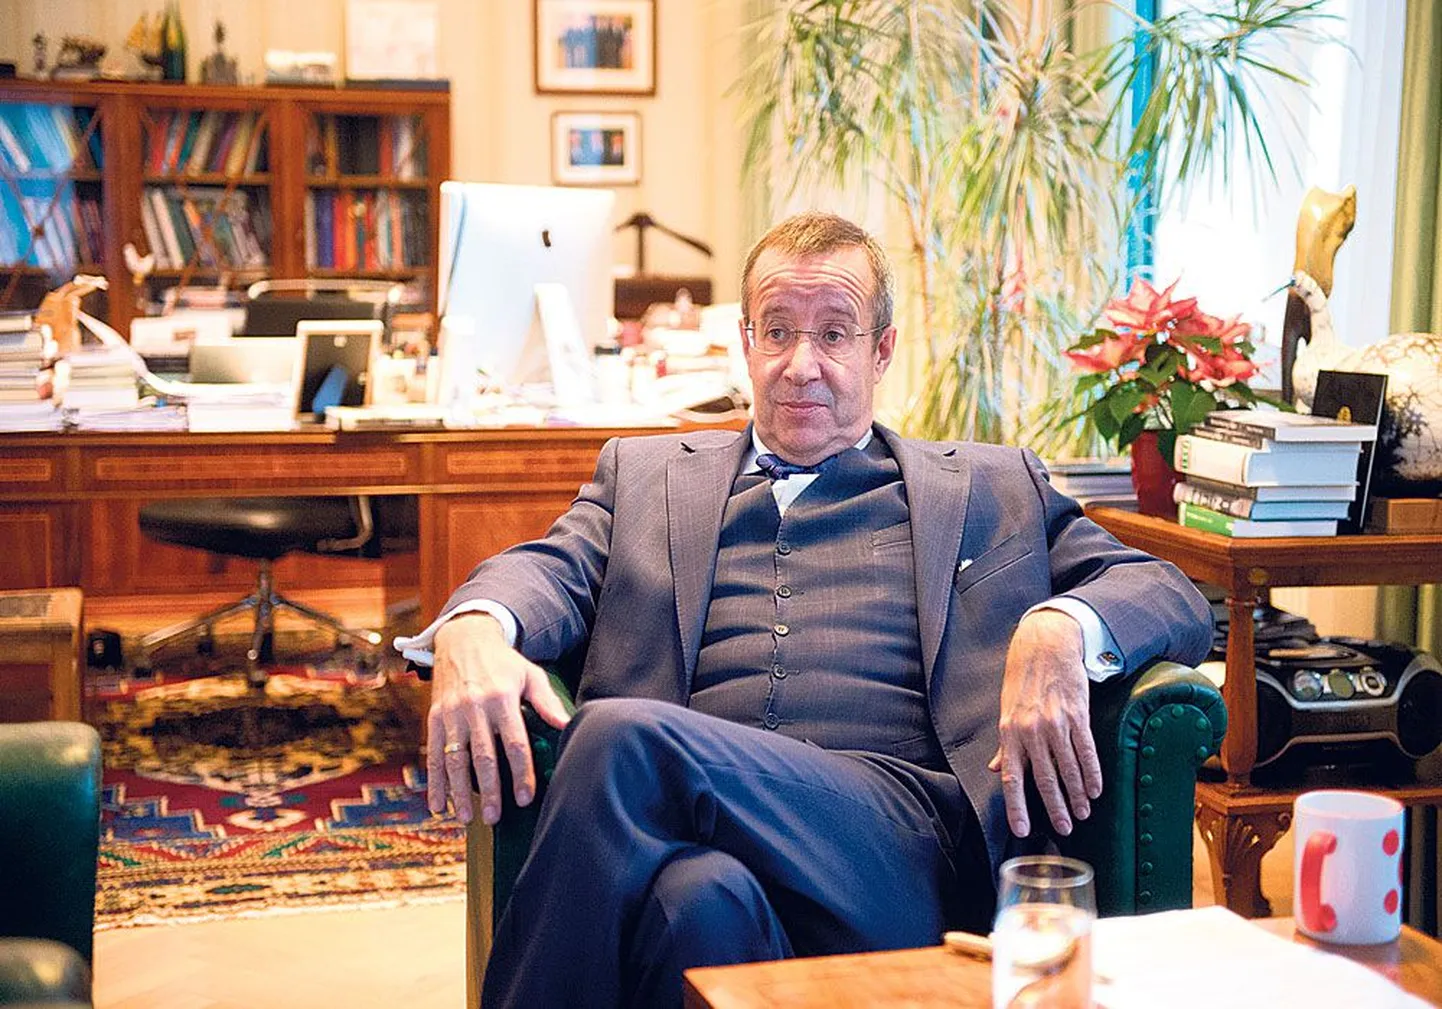 Президент Эстонии Тоомас Хендрик Ильвес считает, что для защиты интересов небольших стран, как Эстония,  Европейская федерация и двухпалатный Европарламент были бы наилучшим решением.